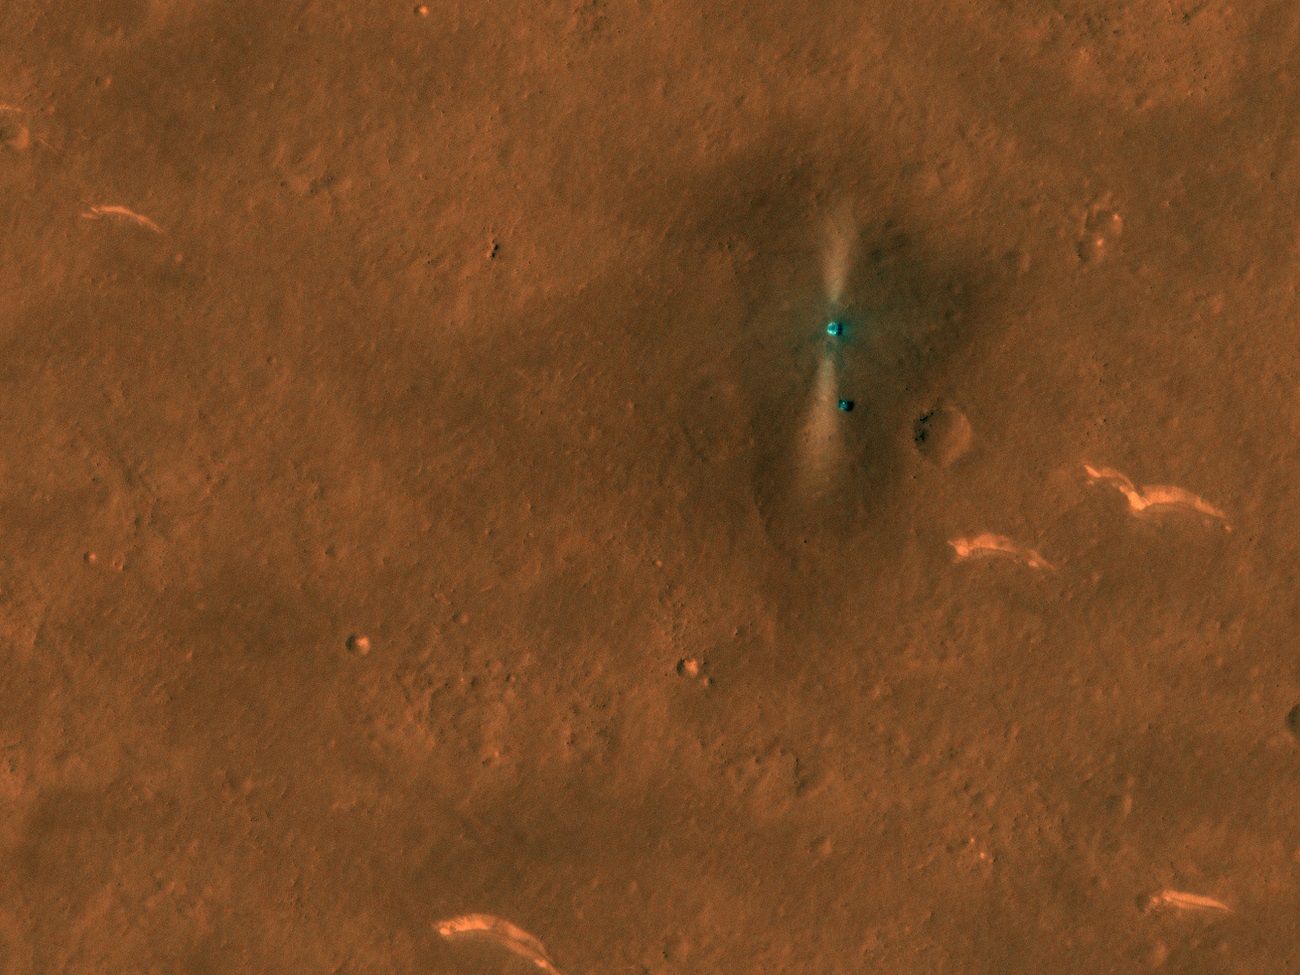 Chiński łazik Zhurong został dostrzeżony z orbity Marsa. Zobaczcie zdjęcia